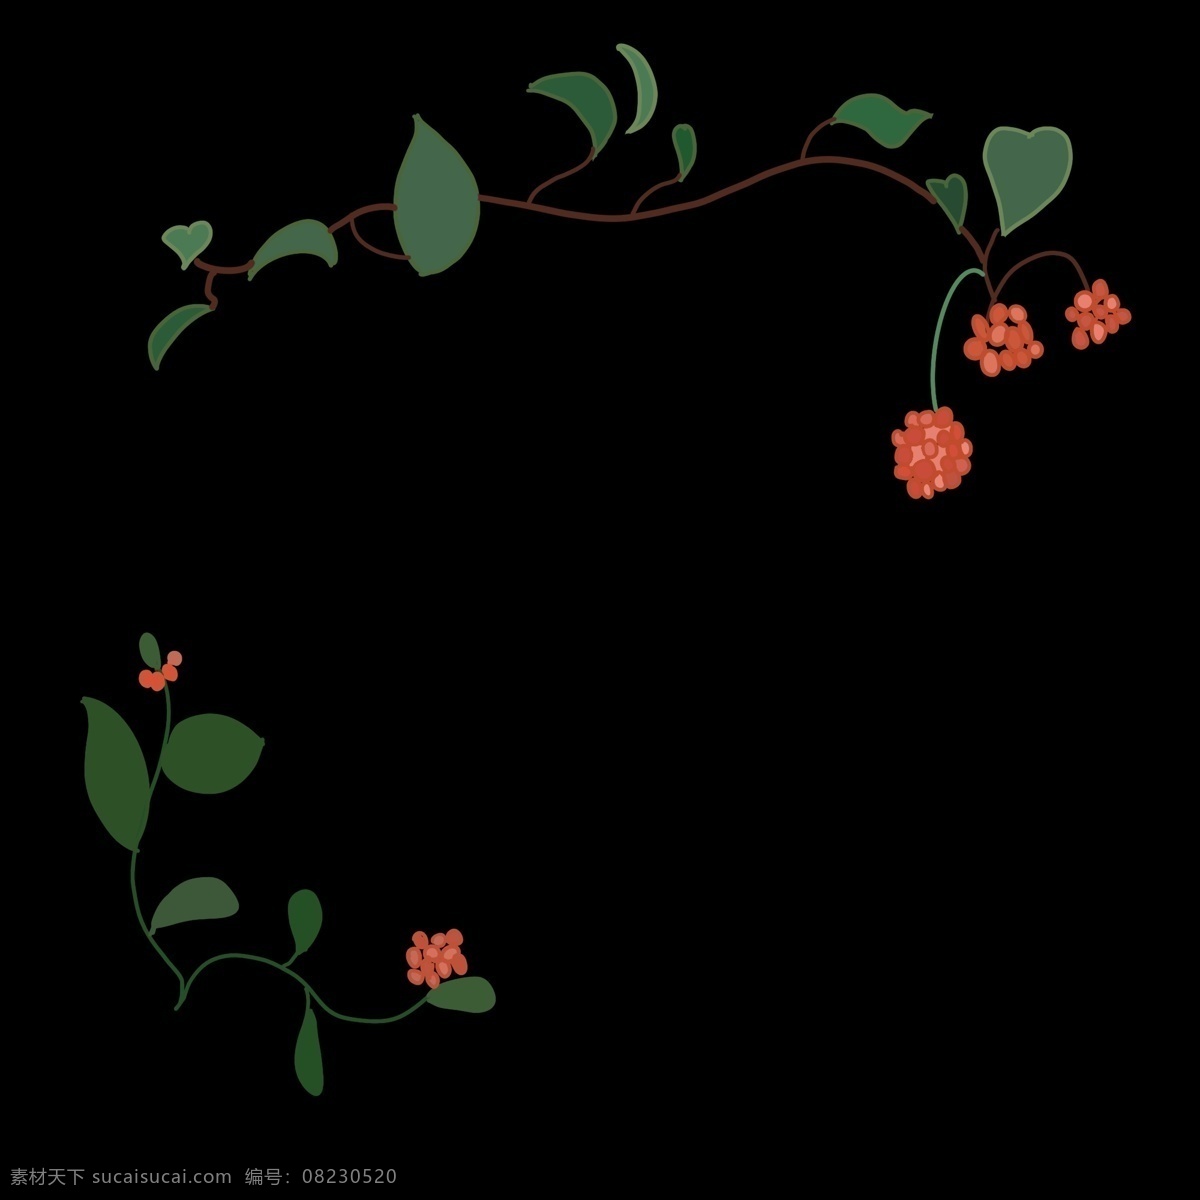 鲜花 花朵 花 藤 边框 鲜花的花藤 卡通边框 小物边框 植物边框 叶子边框 美丽边框 红色的花朵